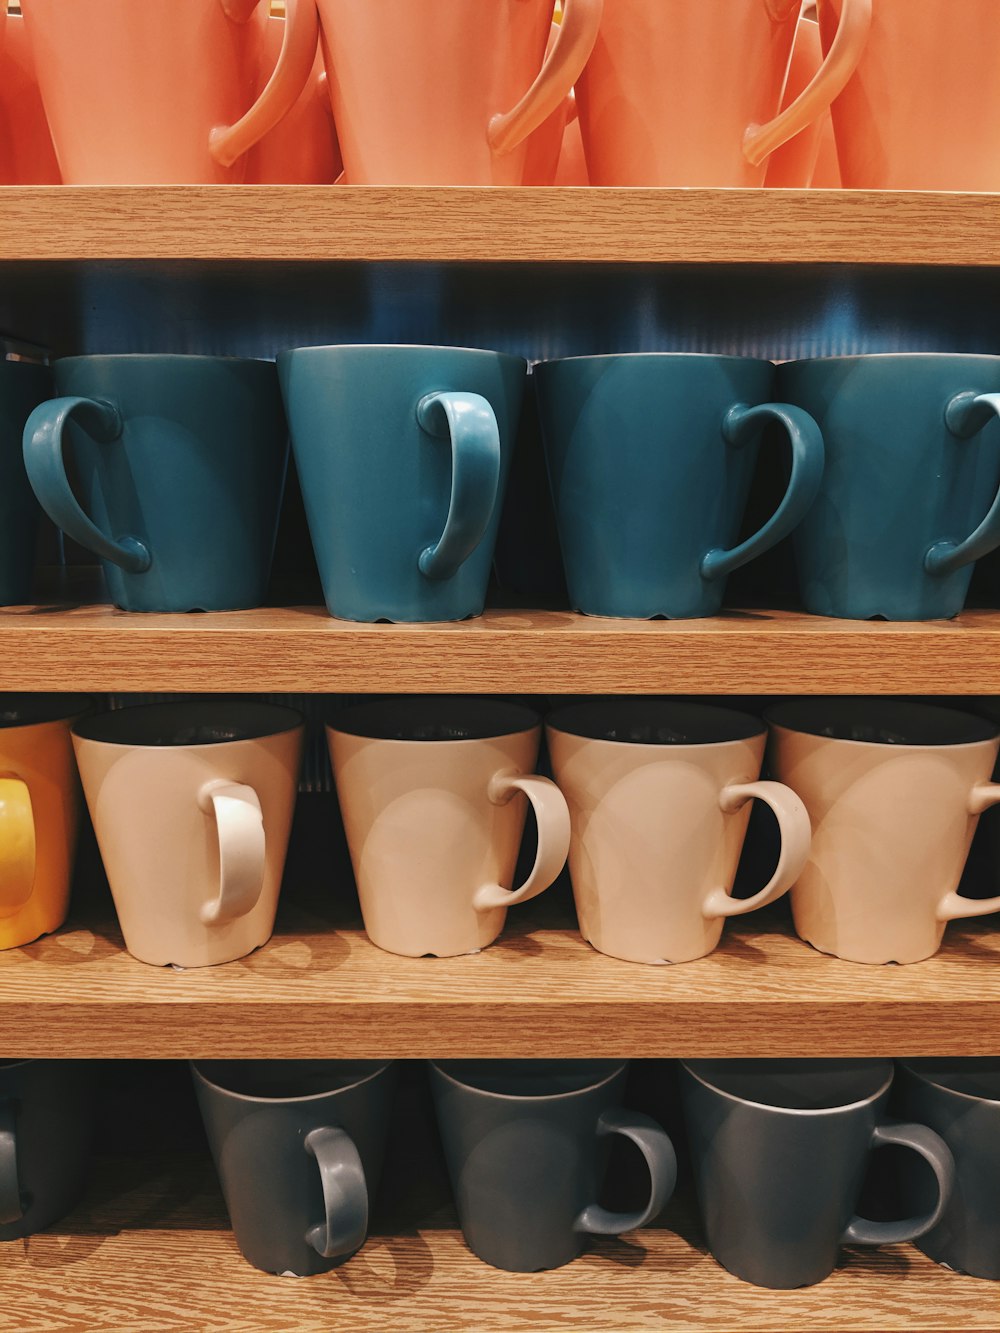 lote de tazas de cerámica de varios colores en el estante